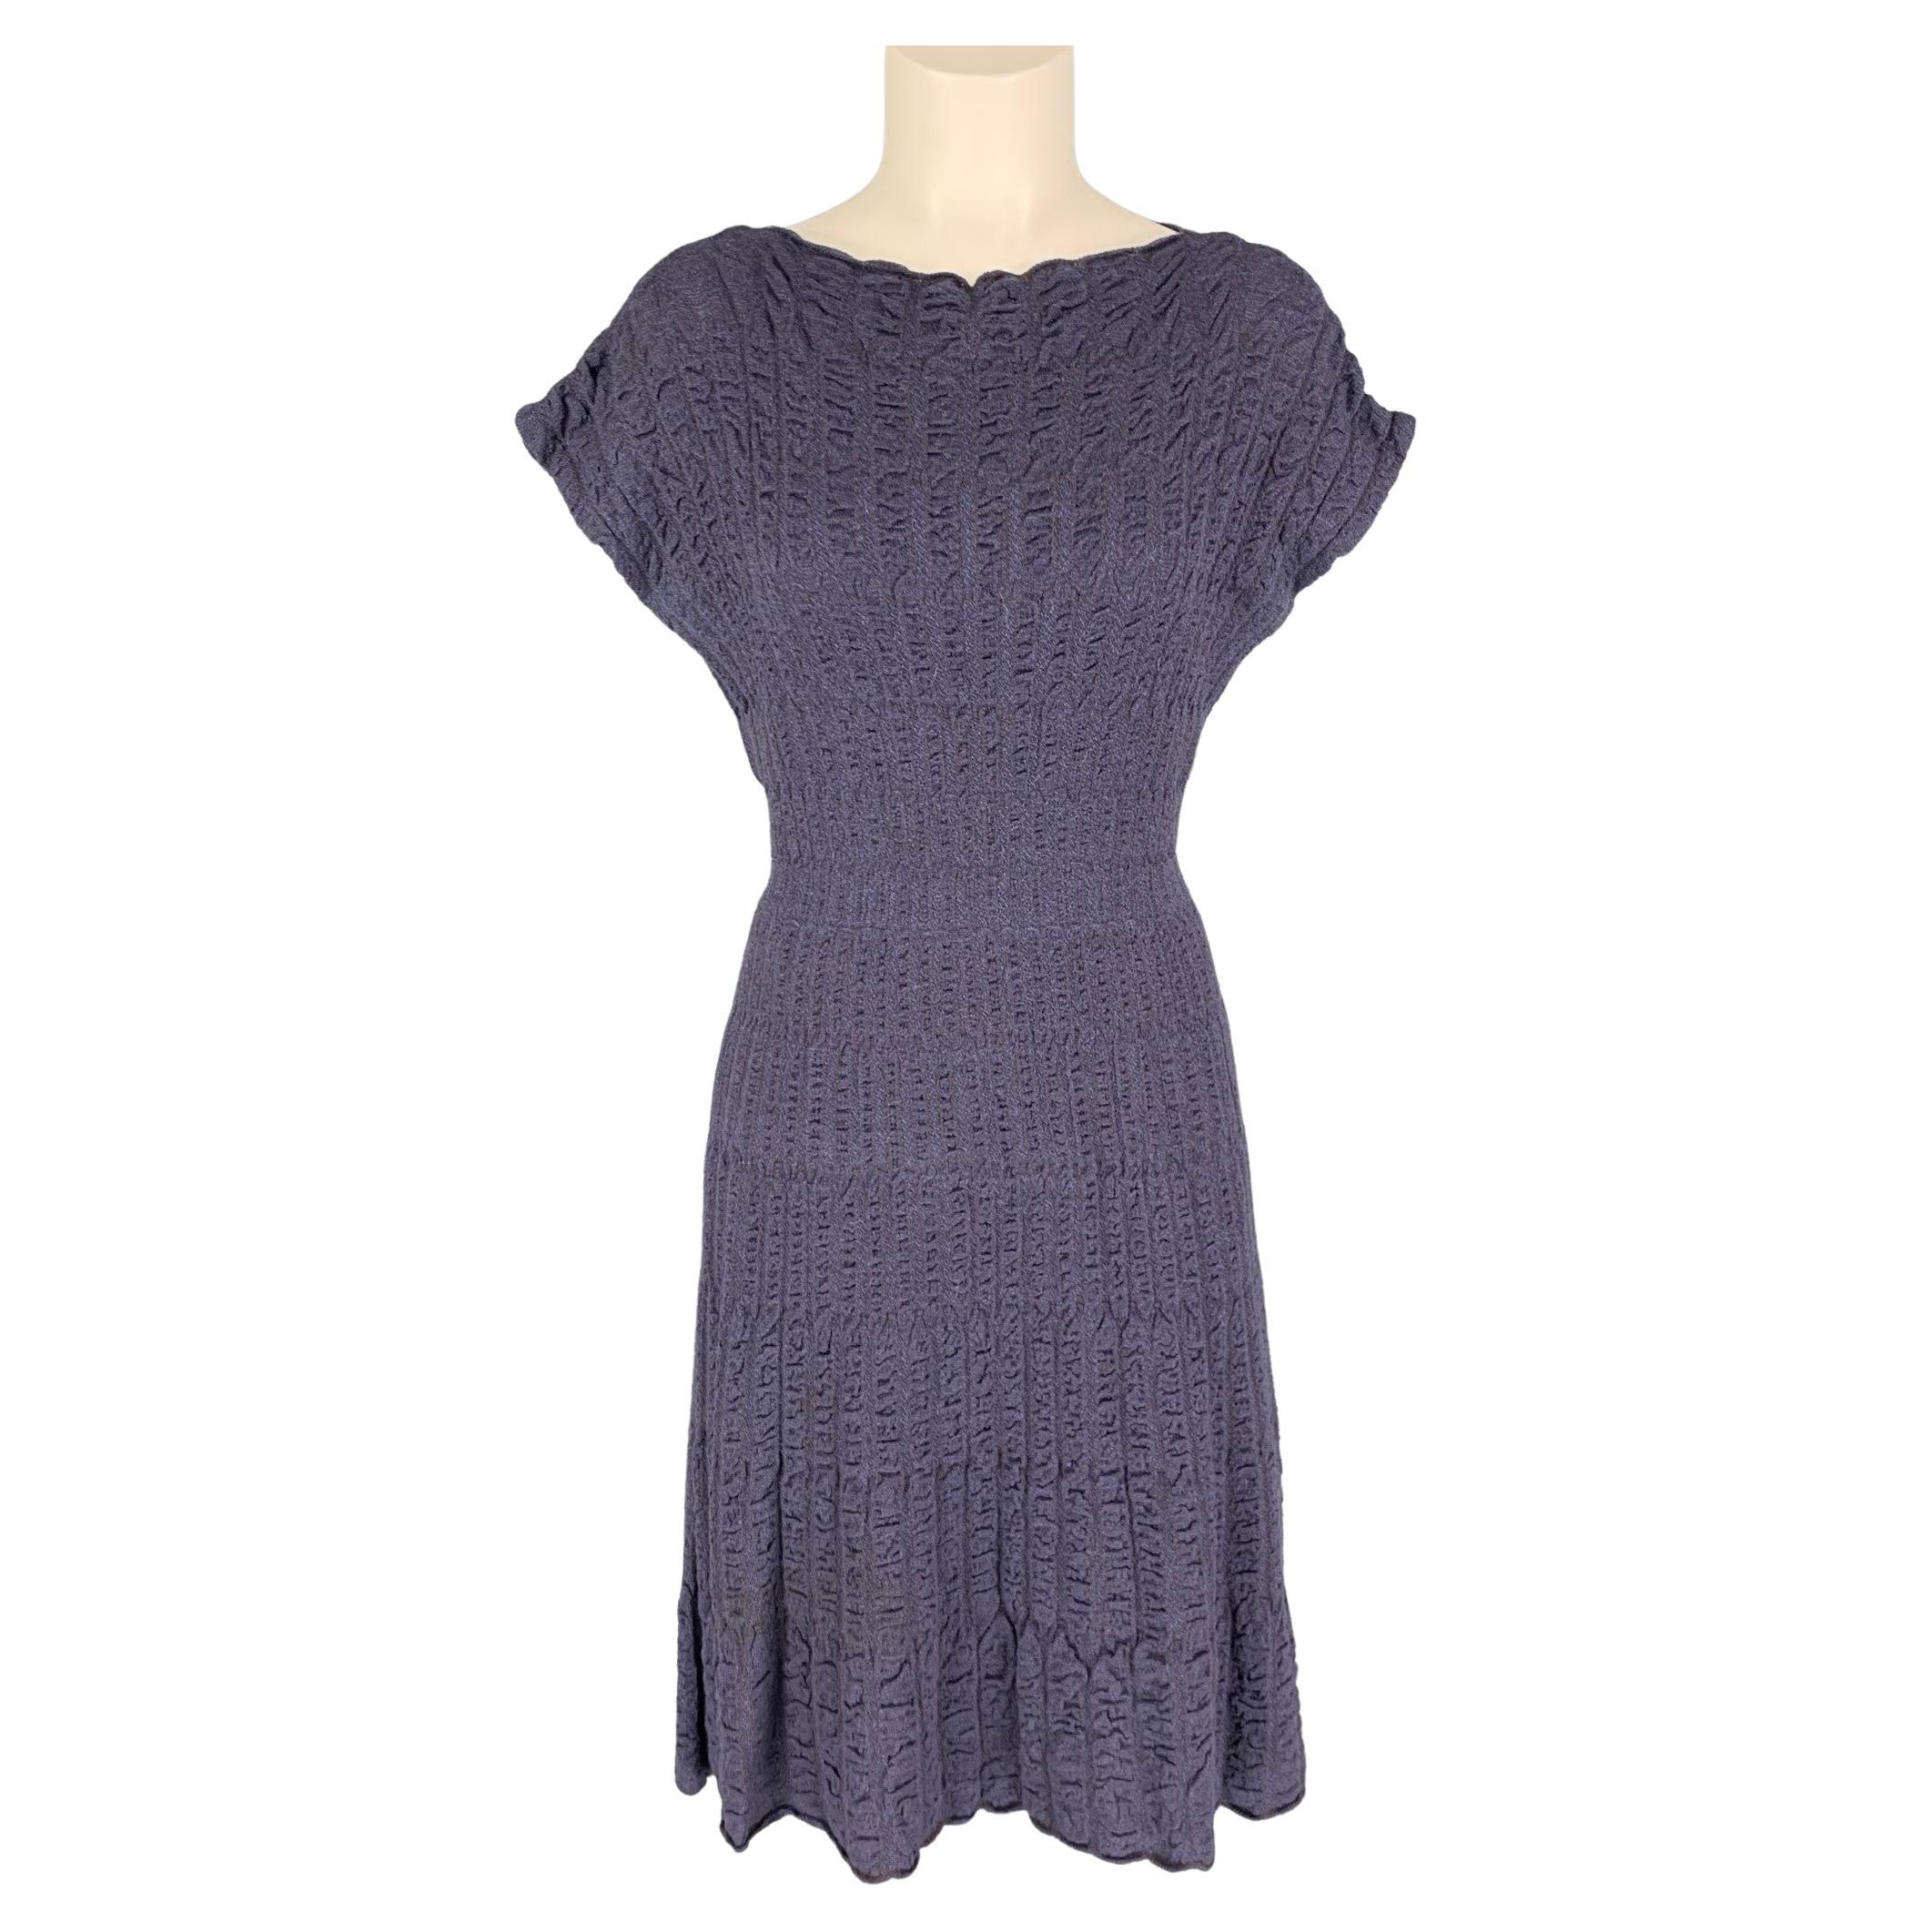 M MISSONI Size 8 Purple Merino wool blend Textured A-Line Dress